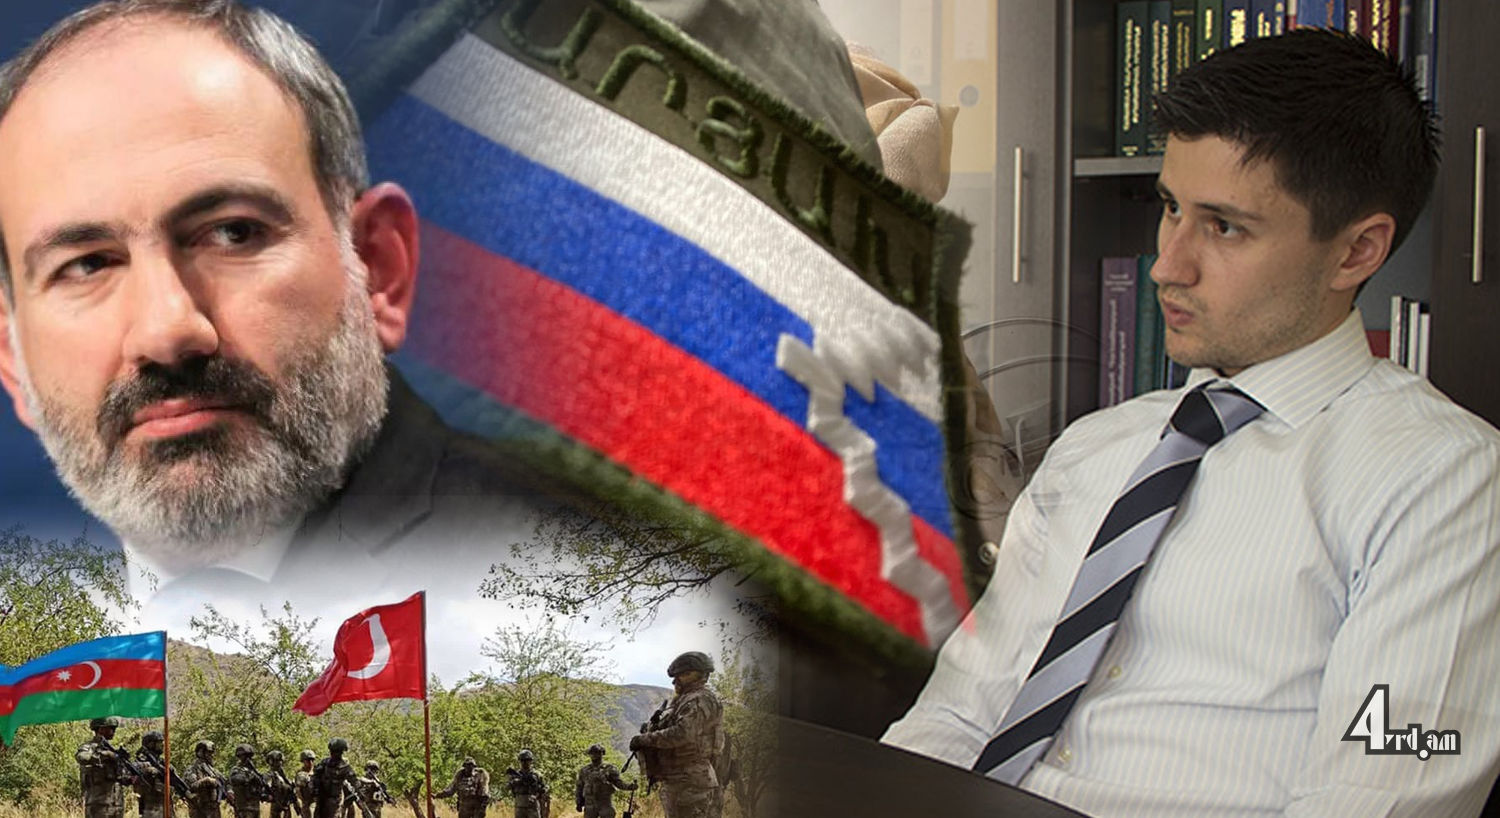 Նիկոլ Փաշինյանը հիմա էլ 100 հազարից ավել հայկական համայնքն է մատաղացու դարձնելու